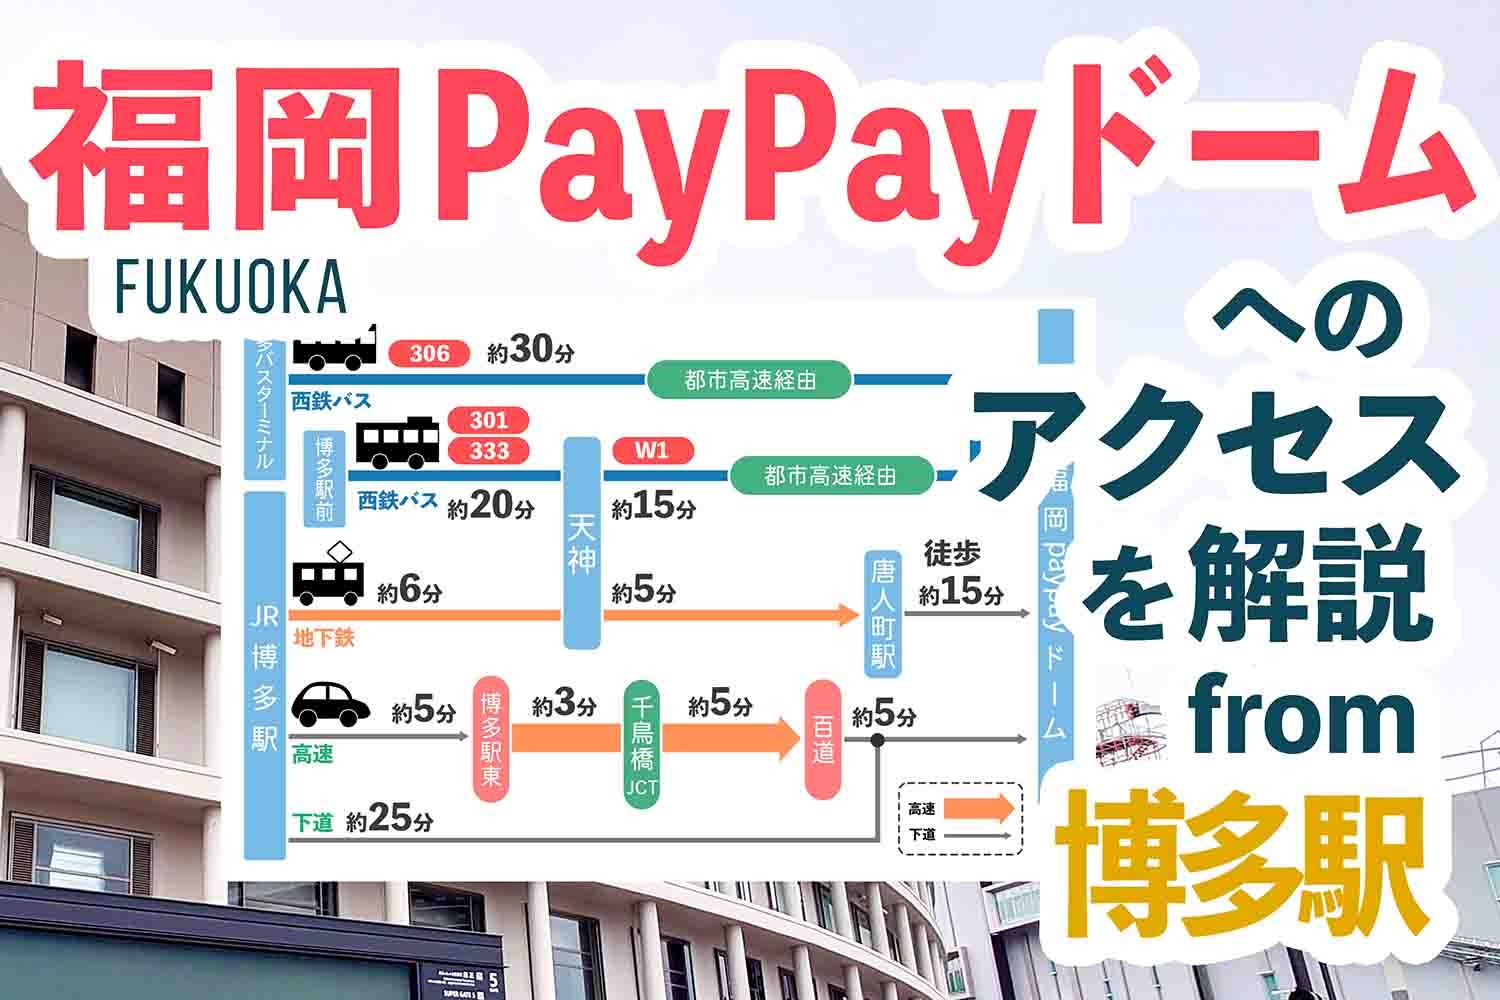 博多駅から「福岡PayPayドーム」へのアクセス